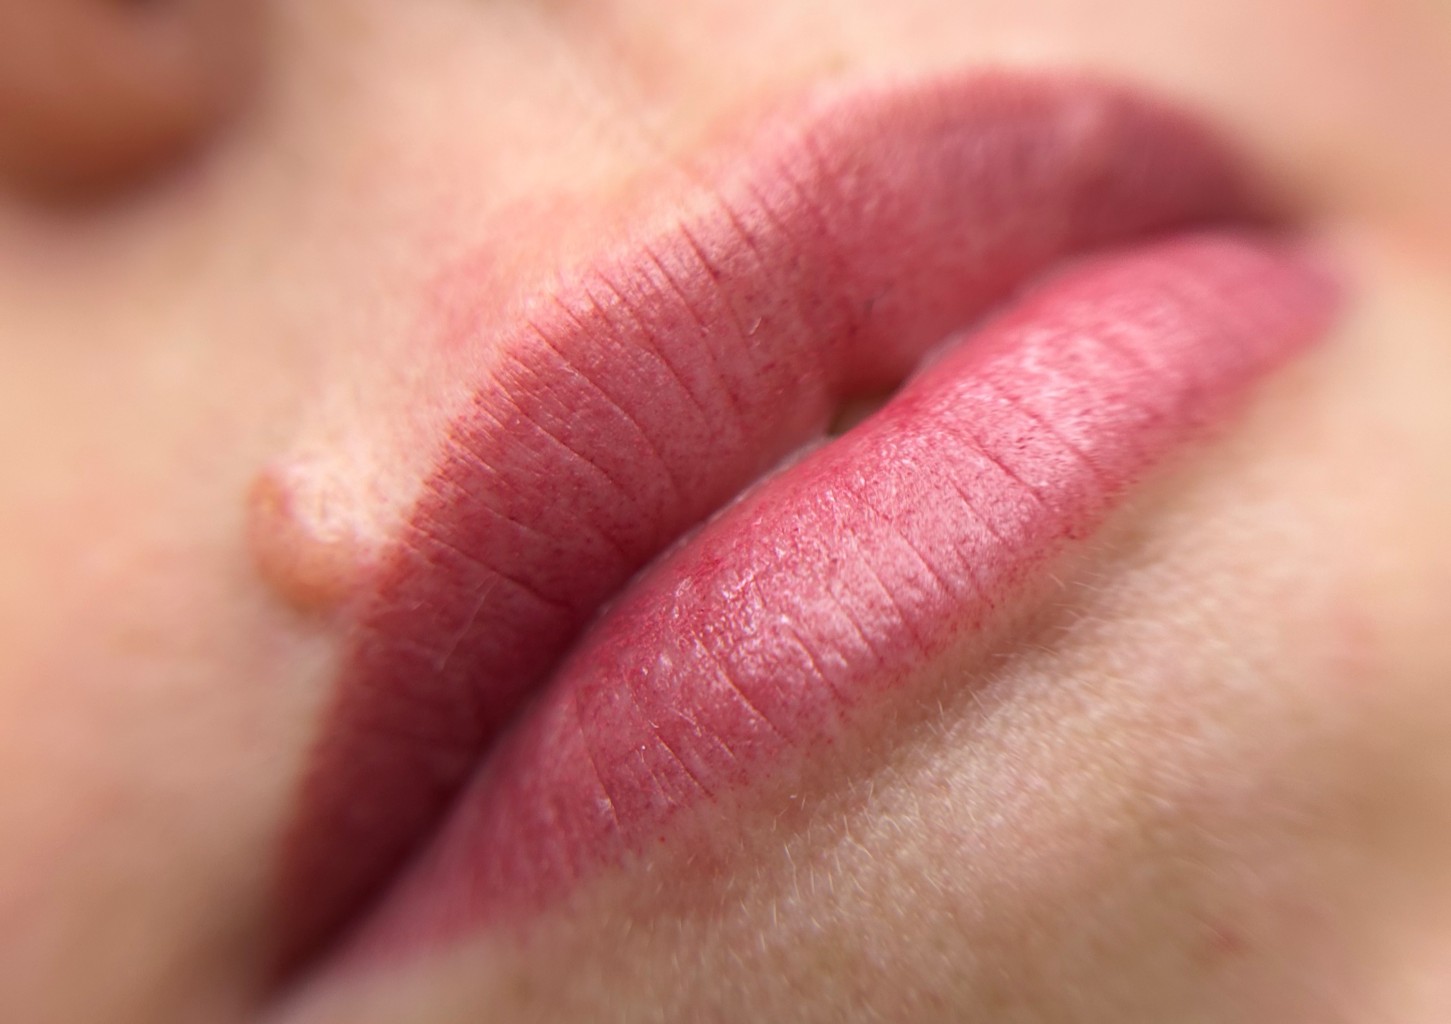 Подчеркните свою красоту перманентным макияжем – акварельный татуаж губ